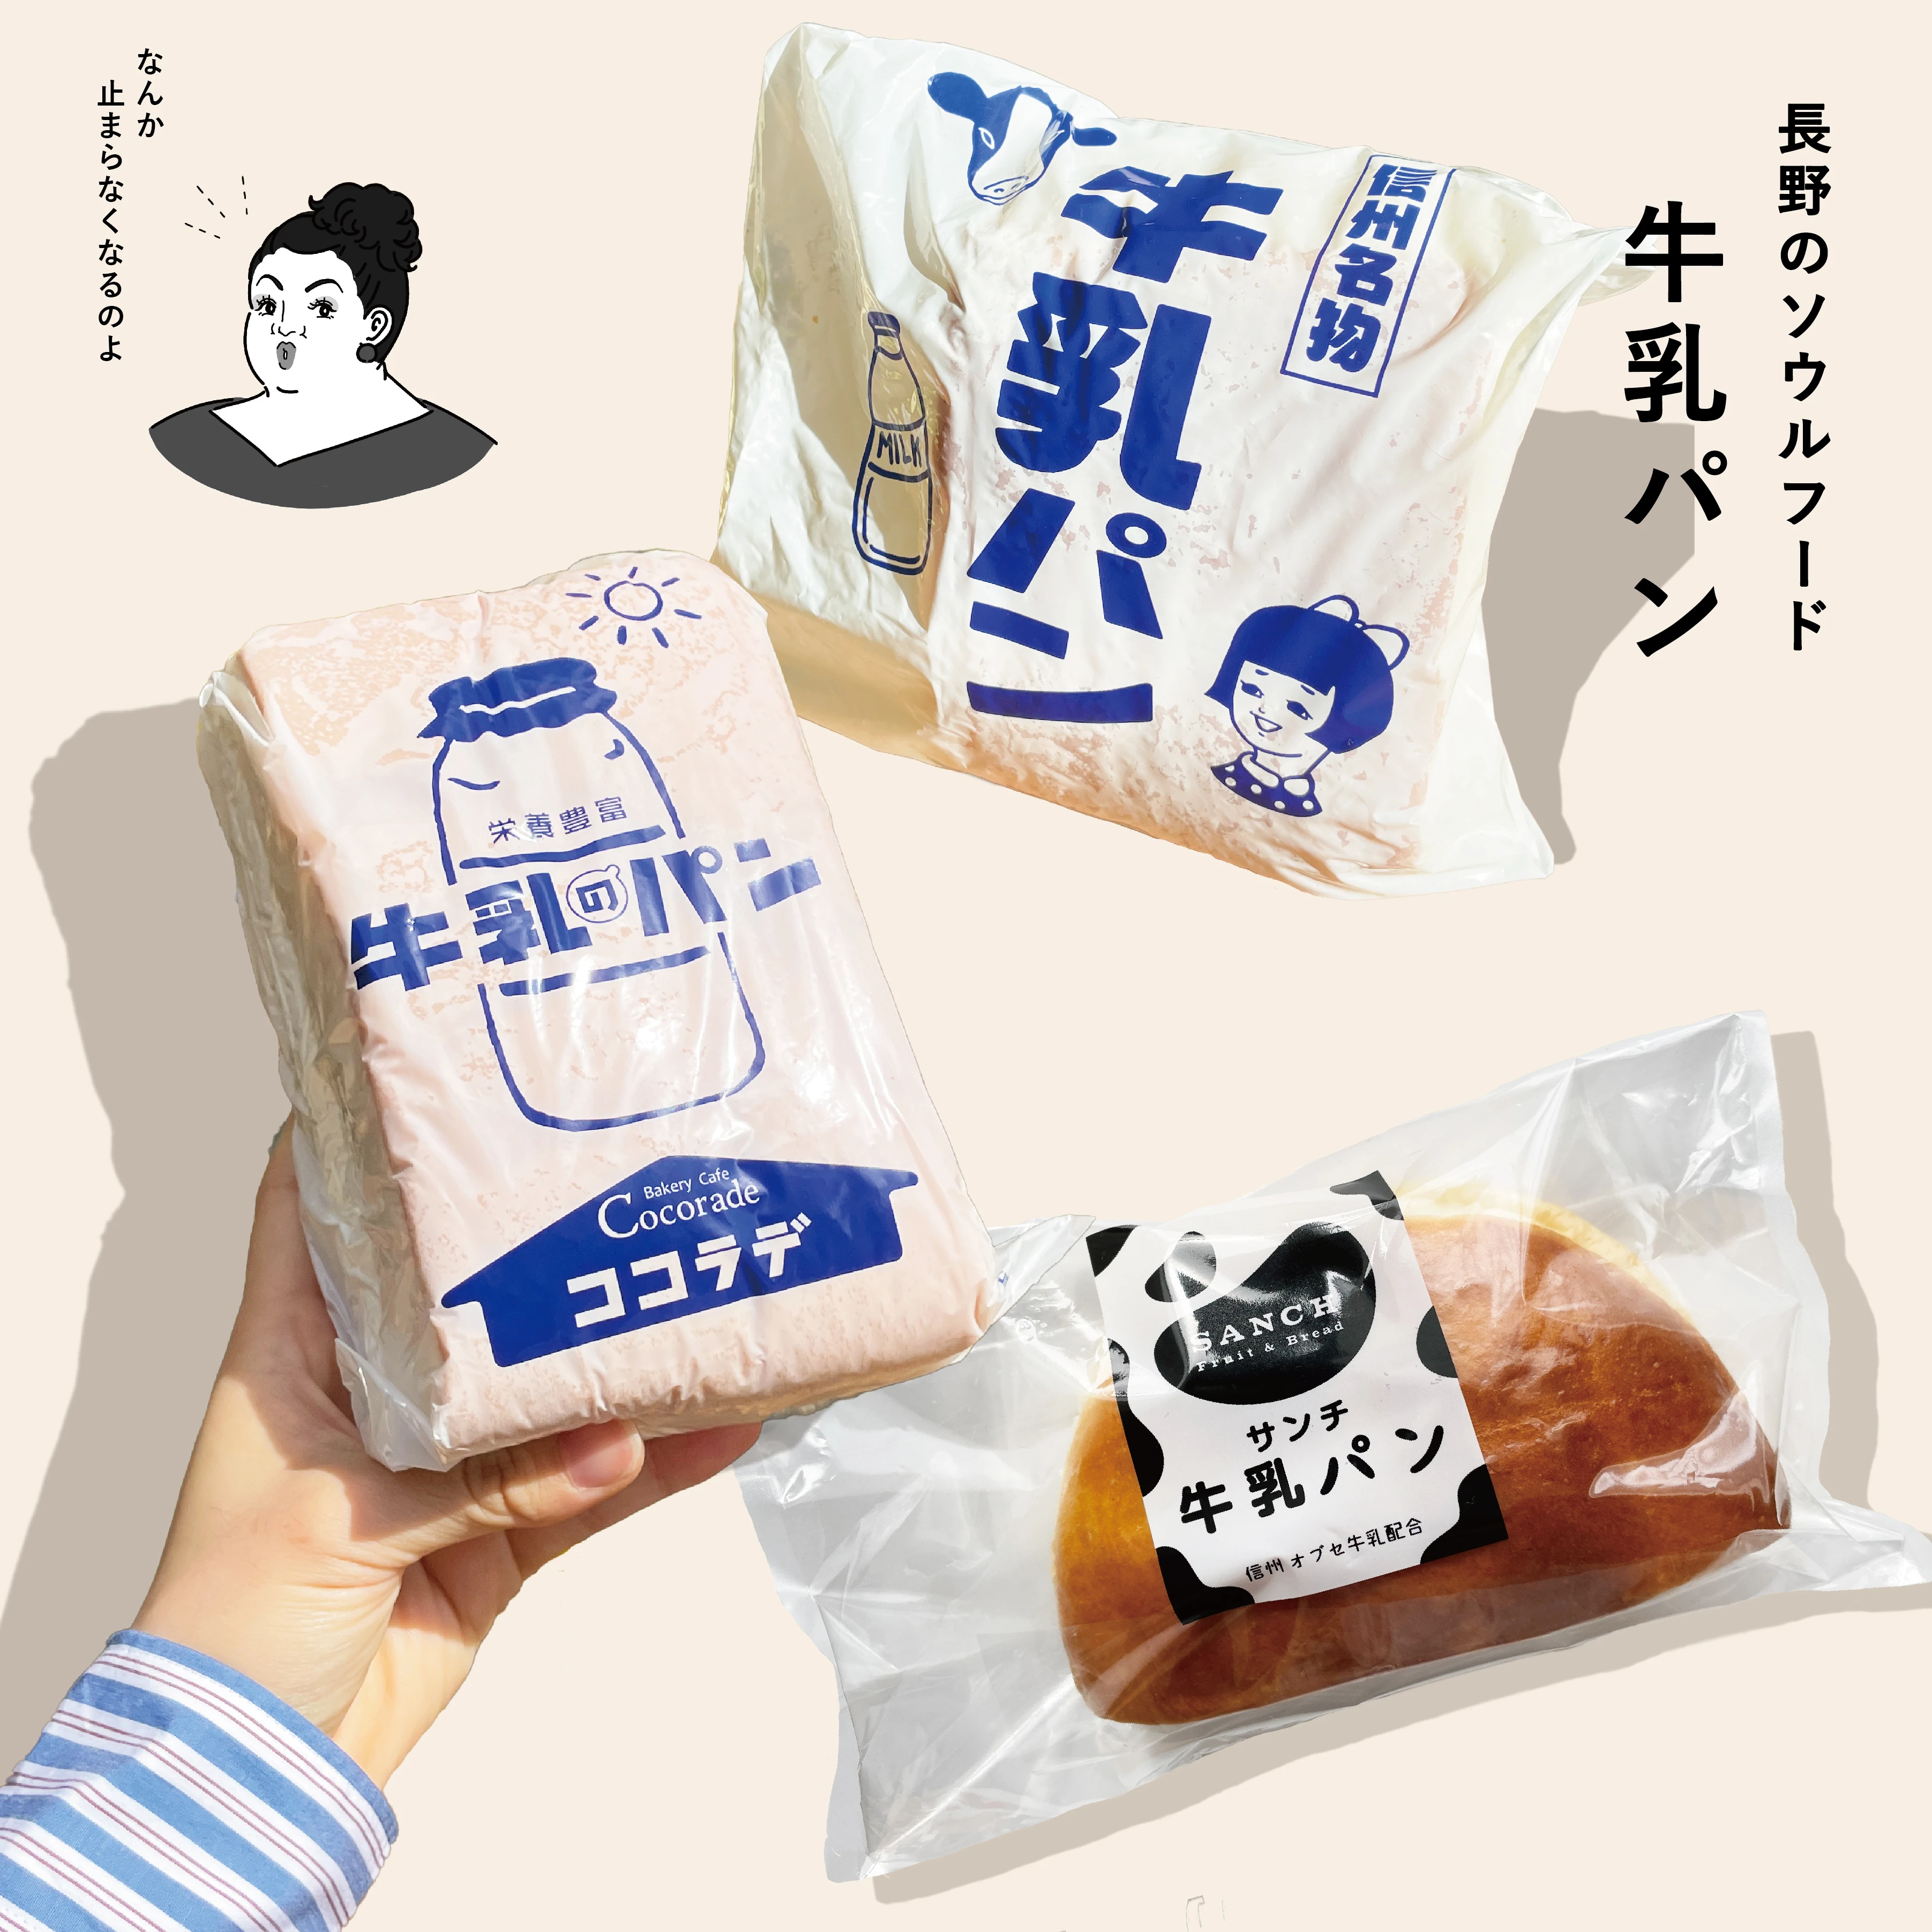 長野県ご当地パン「牛乳パン」　「ベーカリーココラデ」、「サンチ」、「ブランジュリー横浜」の3つの牛乳パン